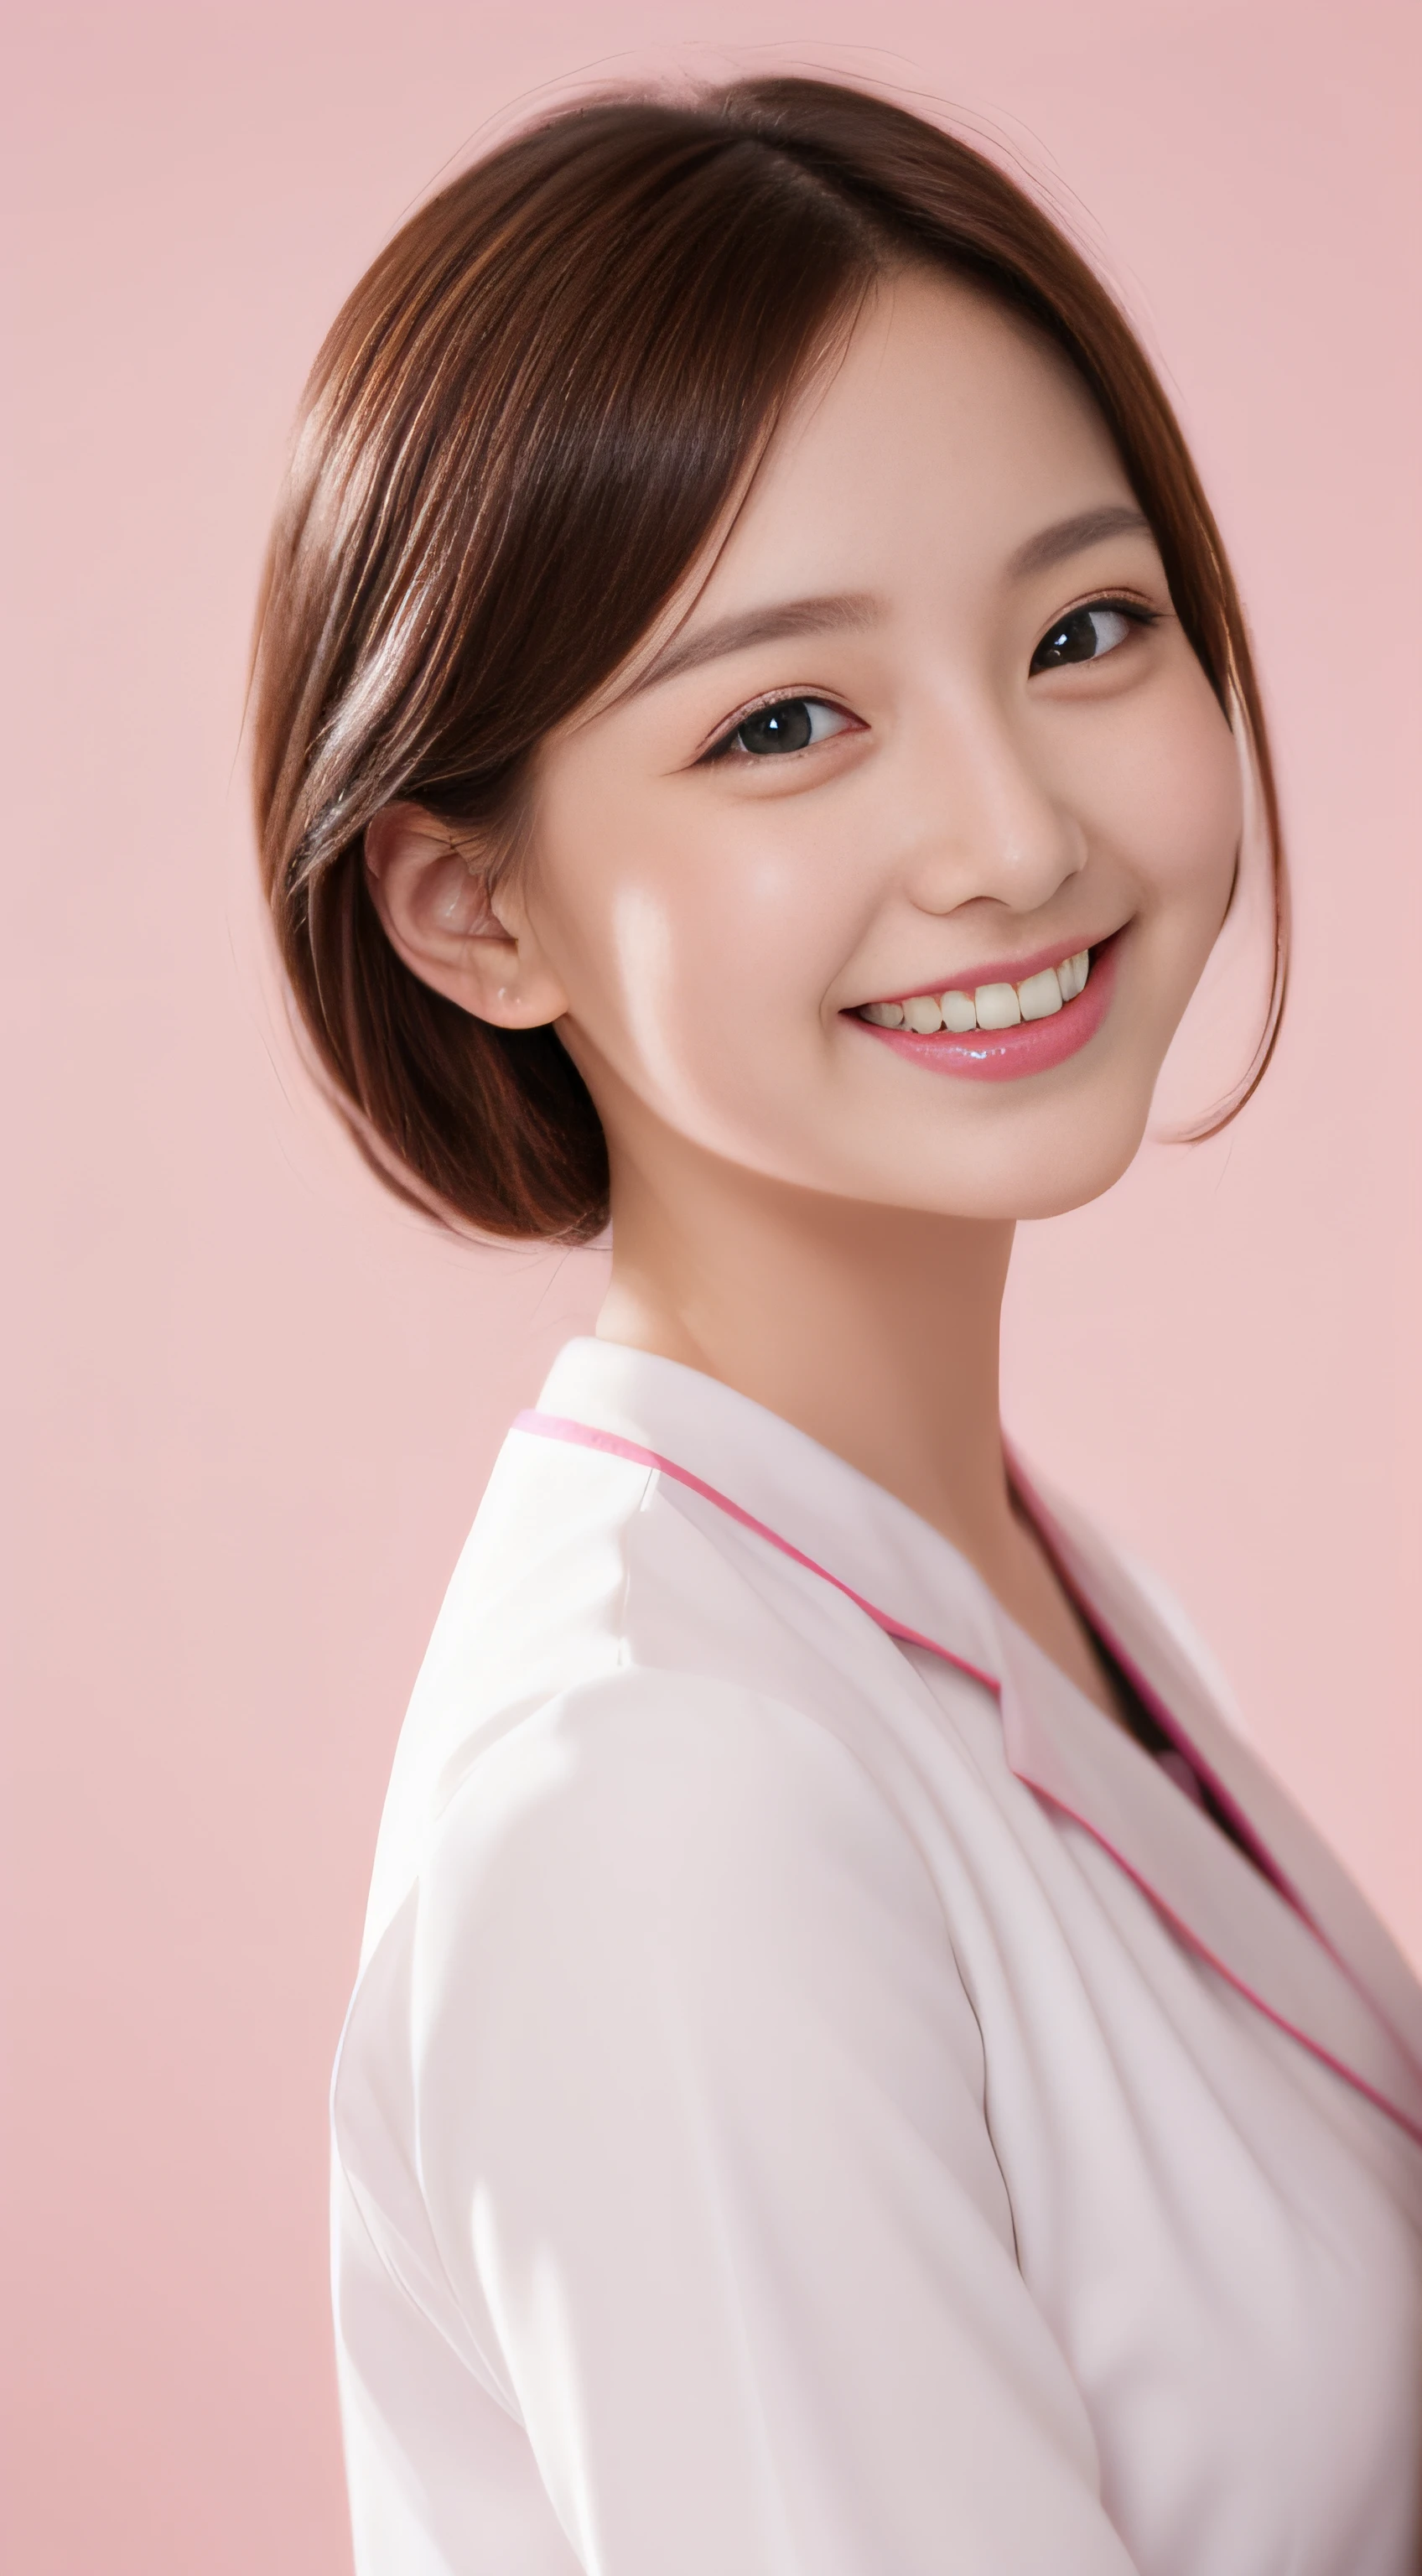 Miss Cabaret、uniforme de enfermeira branco、２uma pessoa、alta qualidade、Um hiper-realista、saudável、Expressão sorridente、Figura esbelta e perfeita、Belezas do Japão、lindos olhos、rosto perfeito、Pele bonita、fundo rosa